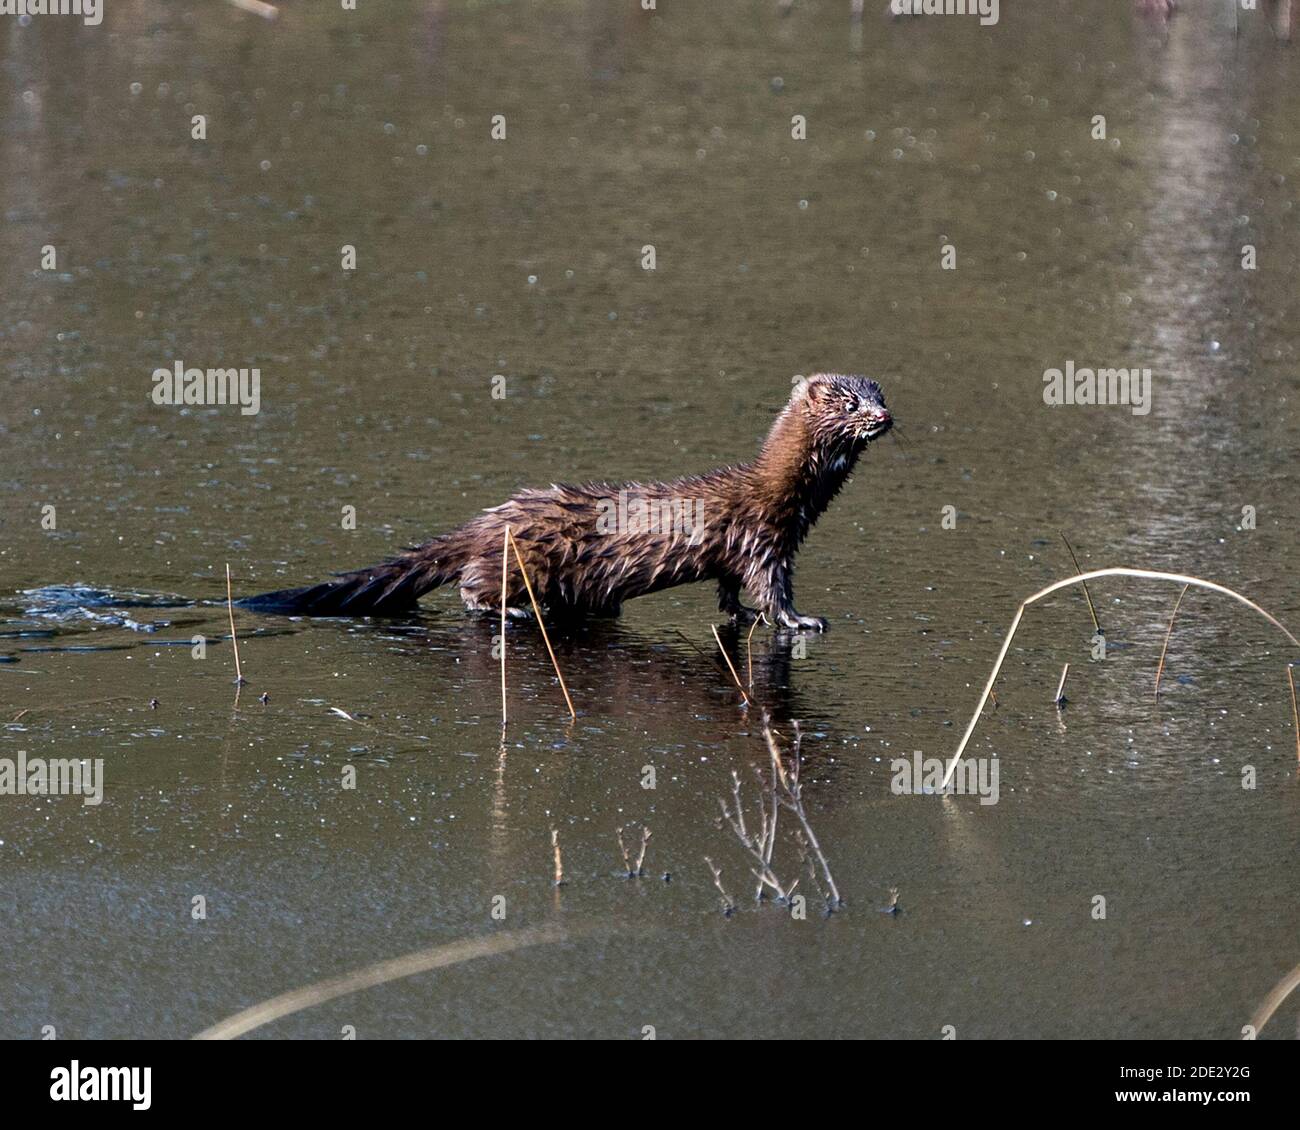 Mink primo piano profilo vista su acqua di ghiaccio sottile con il sole sul viso nel suo ambiente e habitat che mostra la sua pelliccia bruno, zampe, coda. Immagine mink. Foto Stock